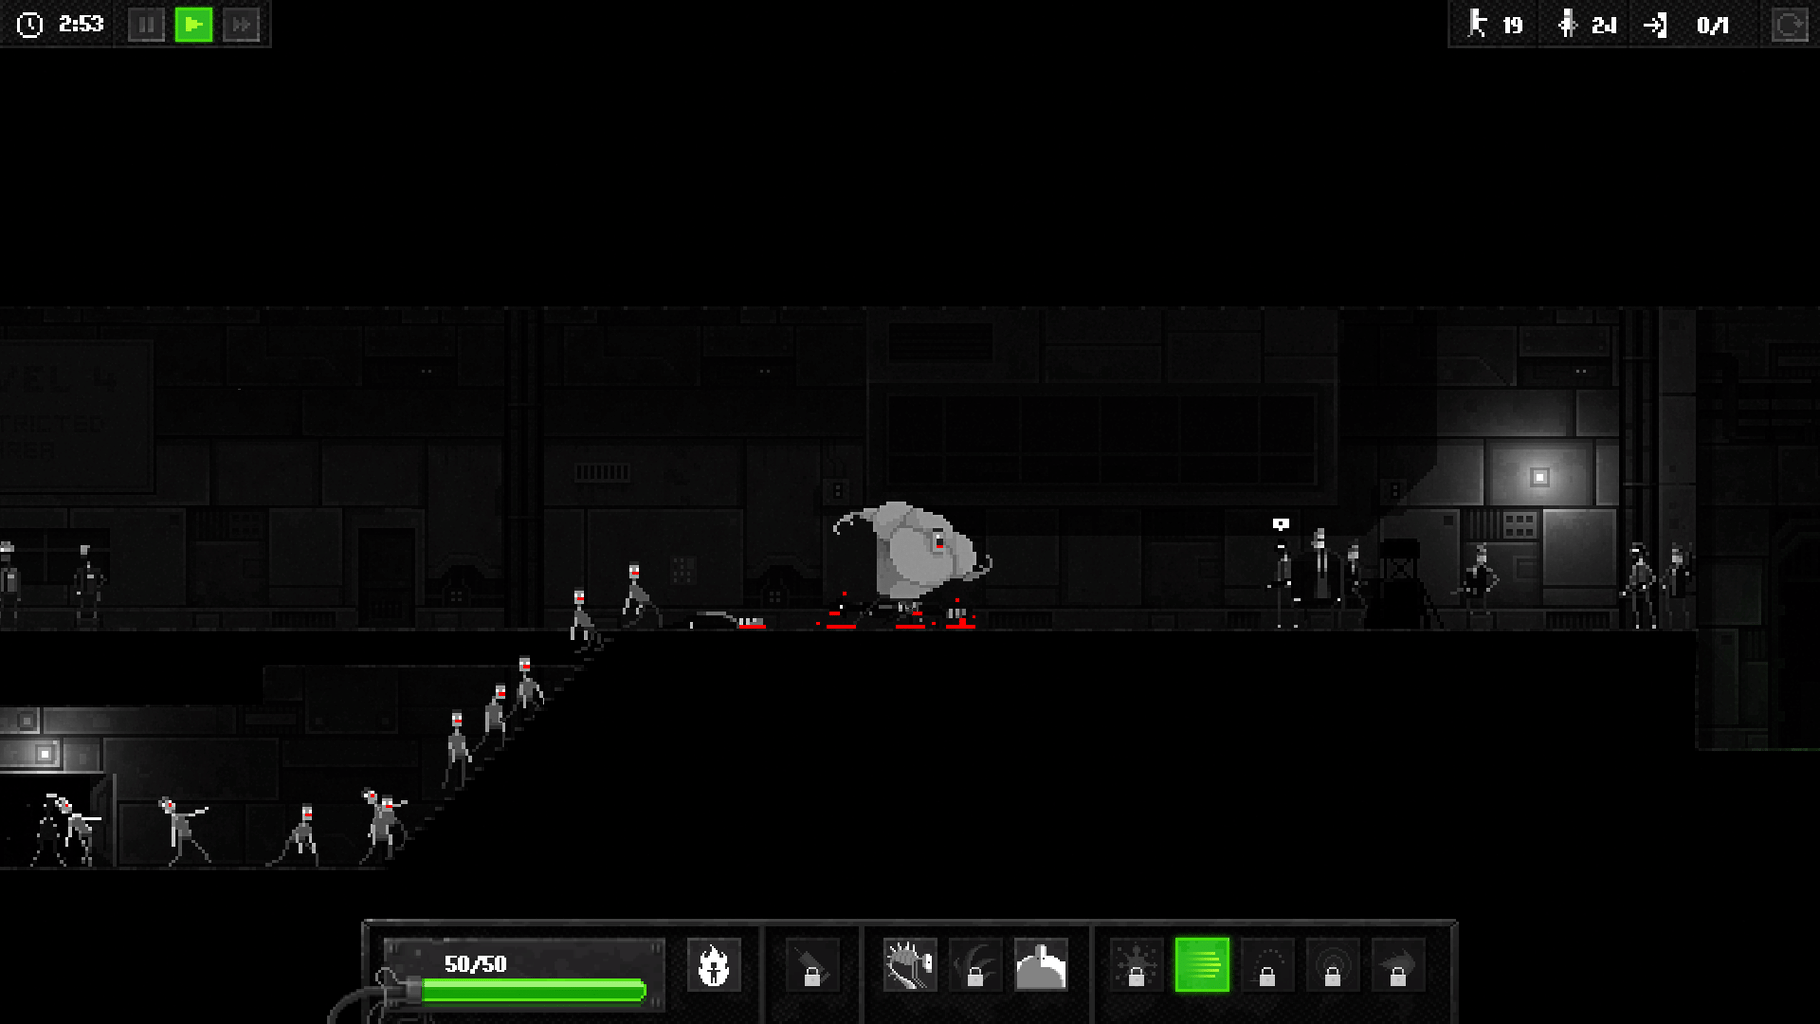 Zombie Night Terror screenshot